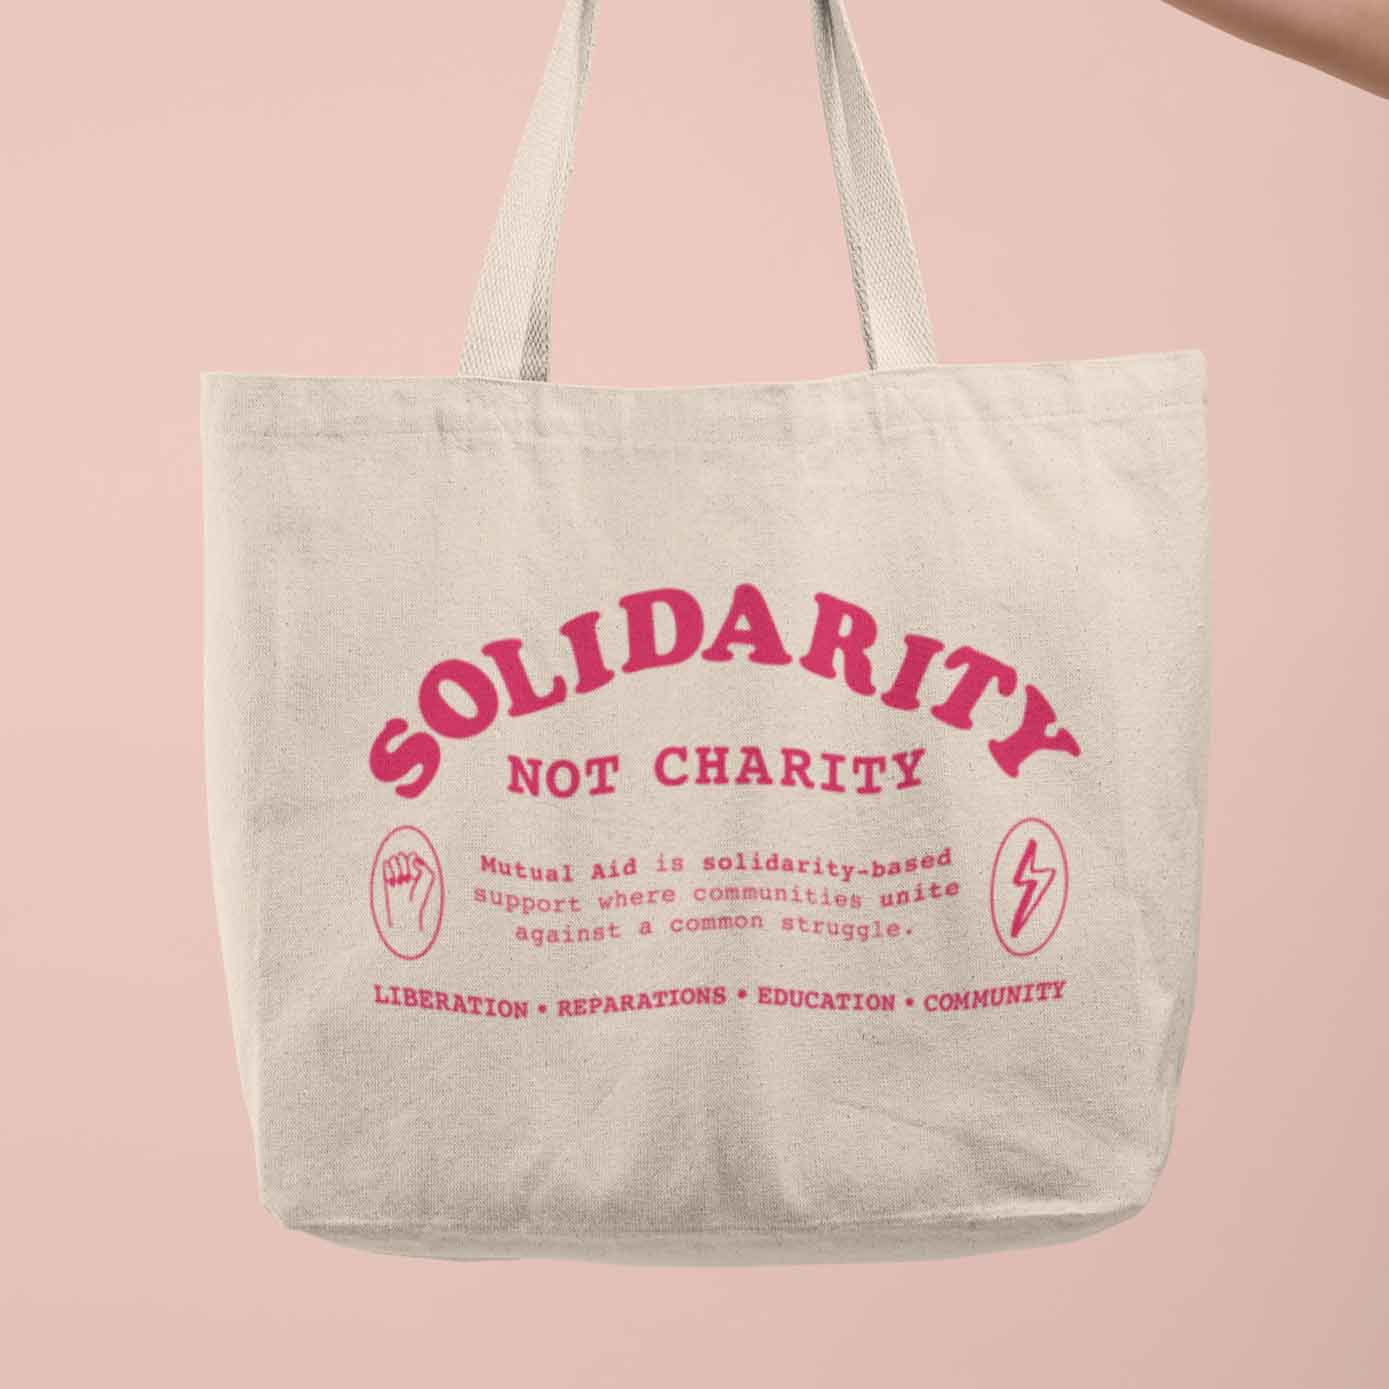 Solidarity Not Charity tote bag